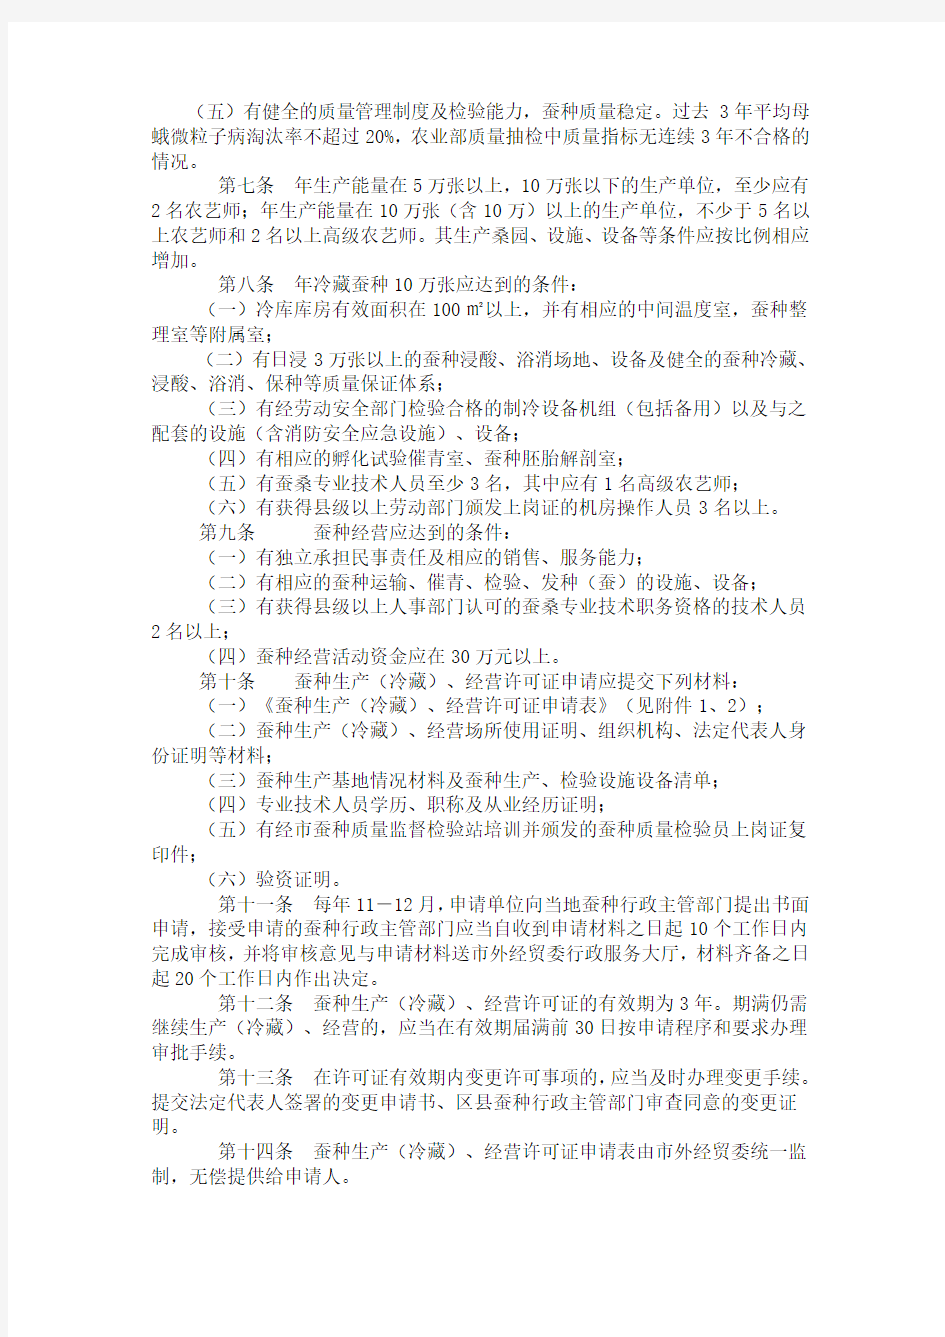 重庆市蚕种生产(冷藏)经营许可证管理办法